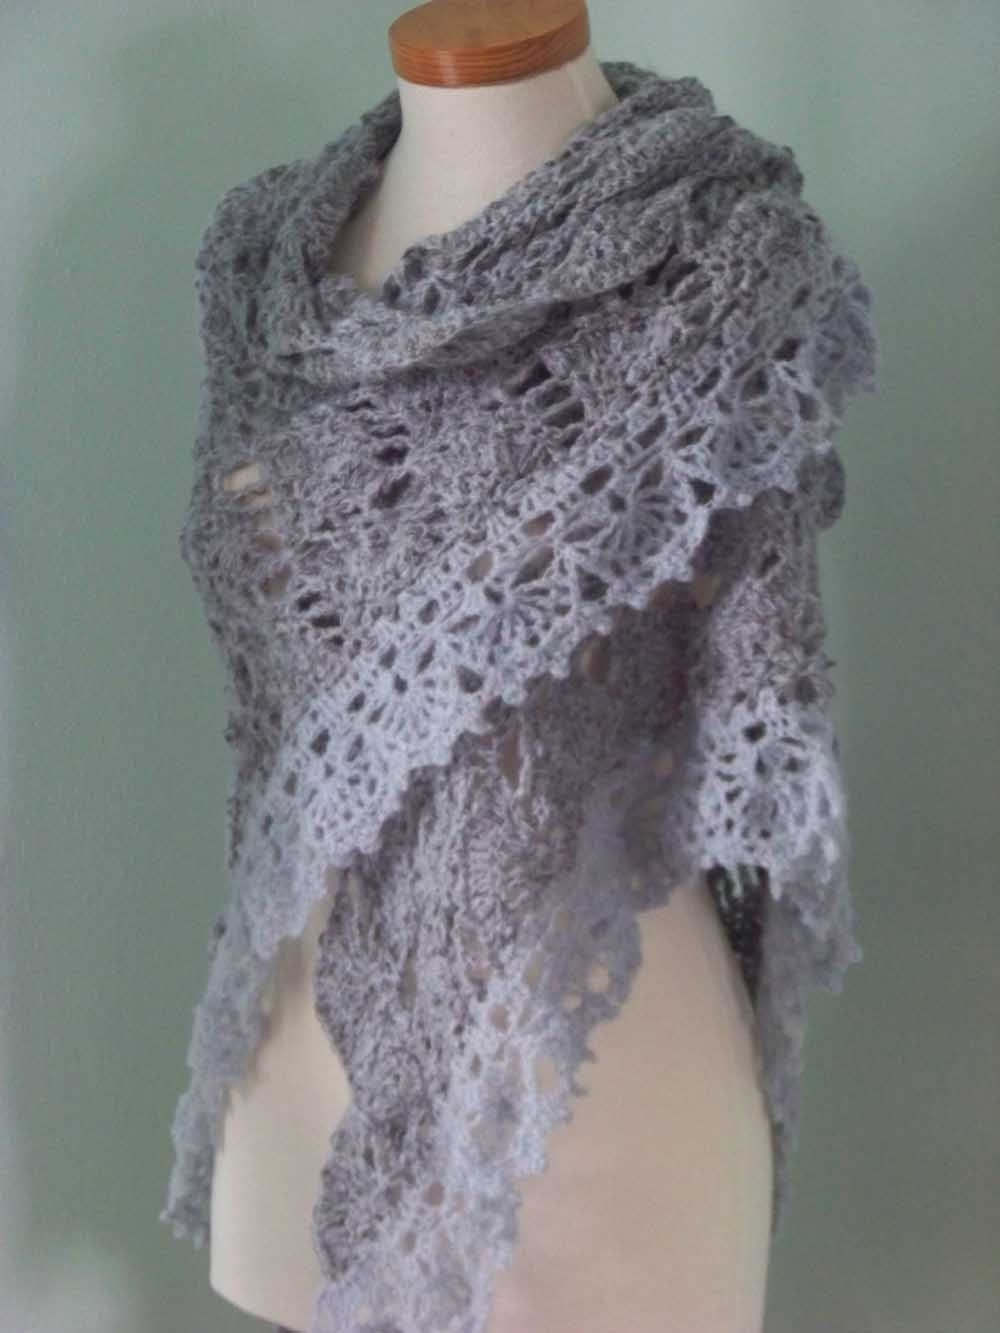 lacy-shawl-crochet-pattern-easy-crochet-patterns